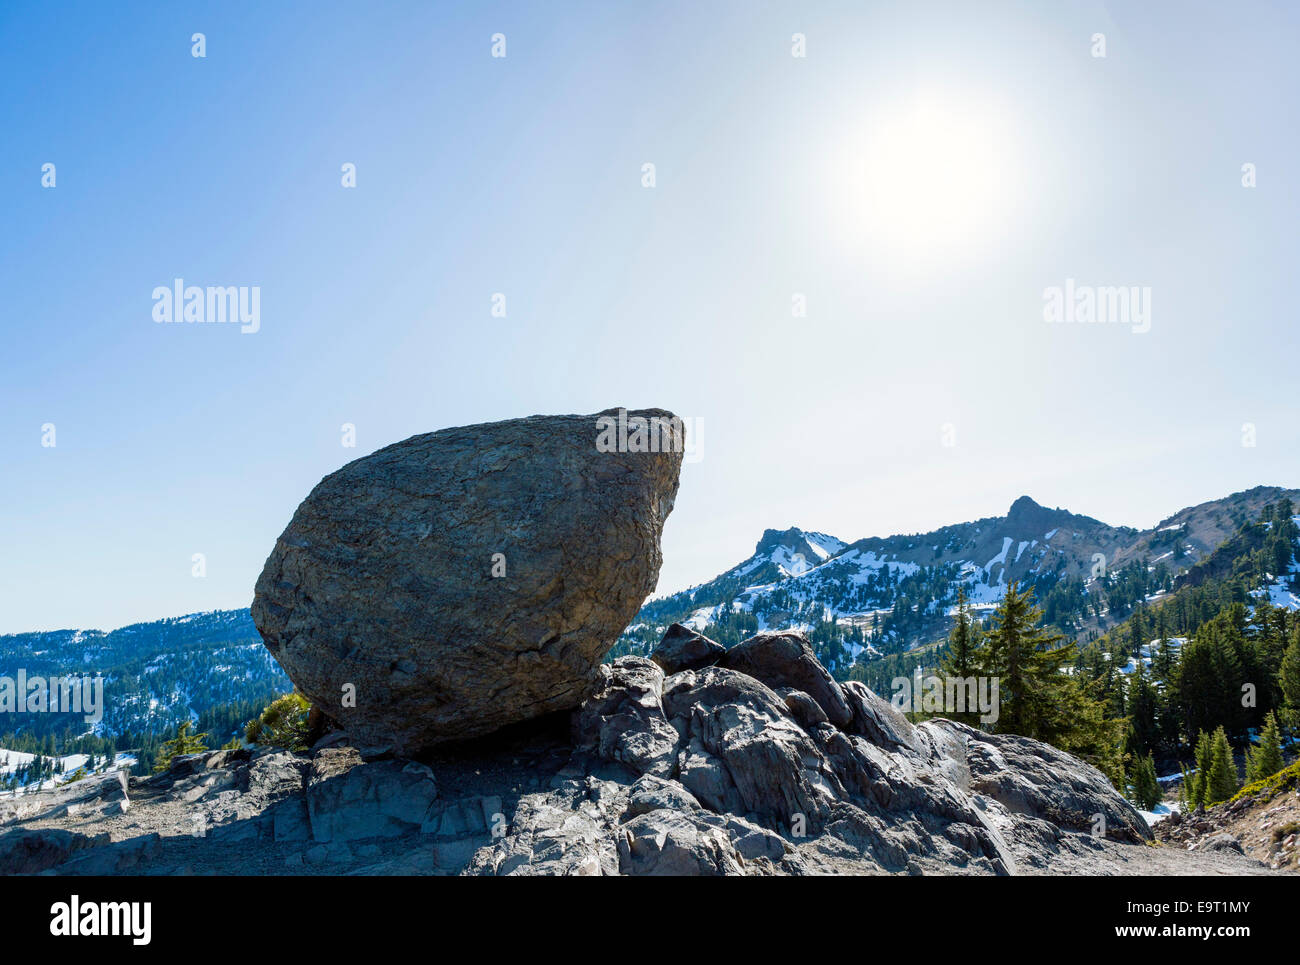 Giant boulder at Brokeoff Volcano Overlook, Lassen Peak Highway, Lassen Volcanic National Park, Cascade Range, California, USA Stock Photo